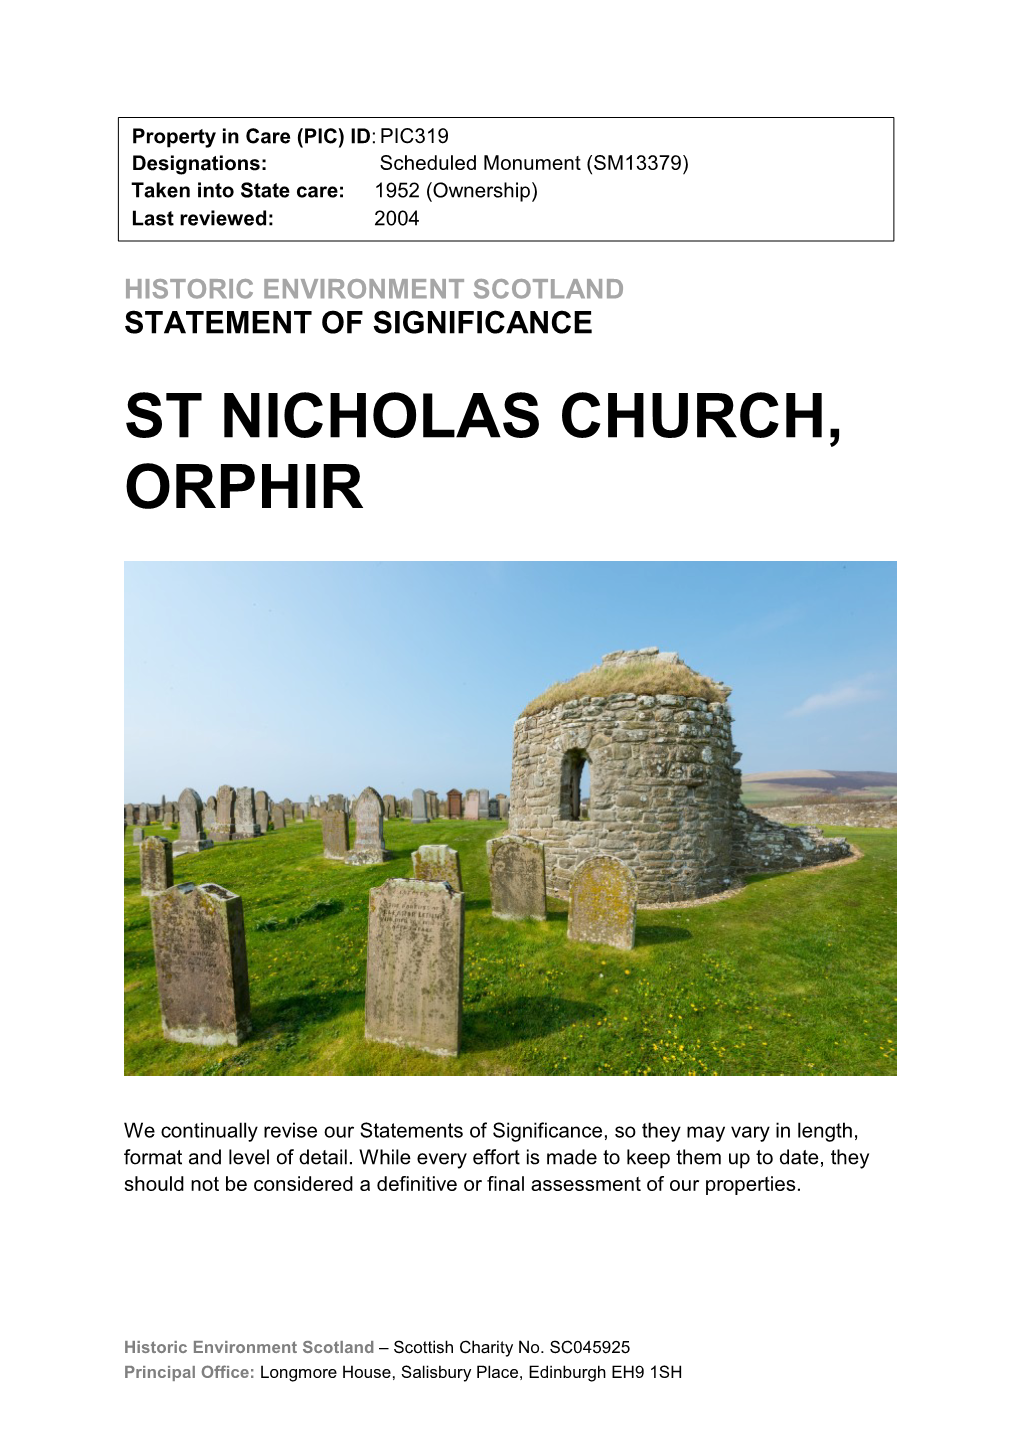 St Nicholas Church, Orphir